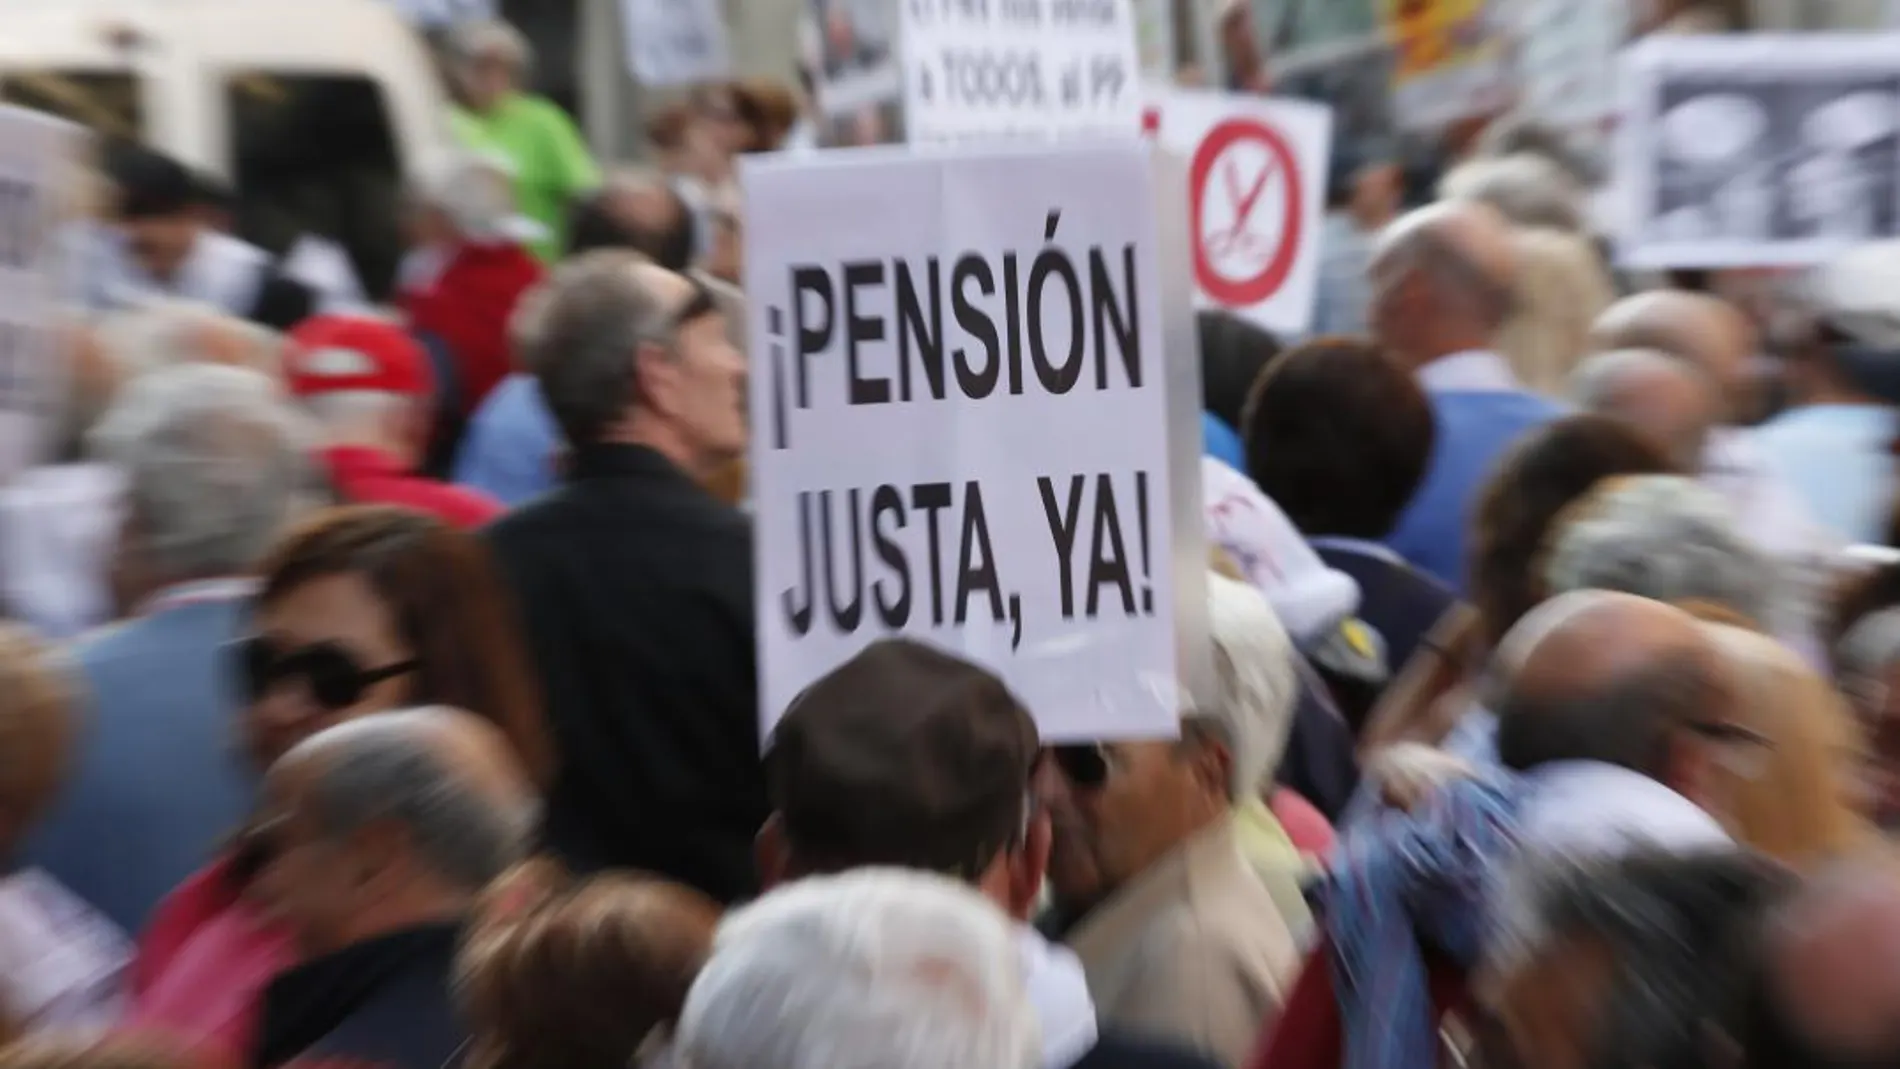 La pensión media que reciben los jubilados en España representa el 58,5 % del salario medio nacional/Javier Fdz-Largo